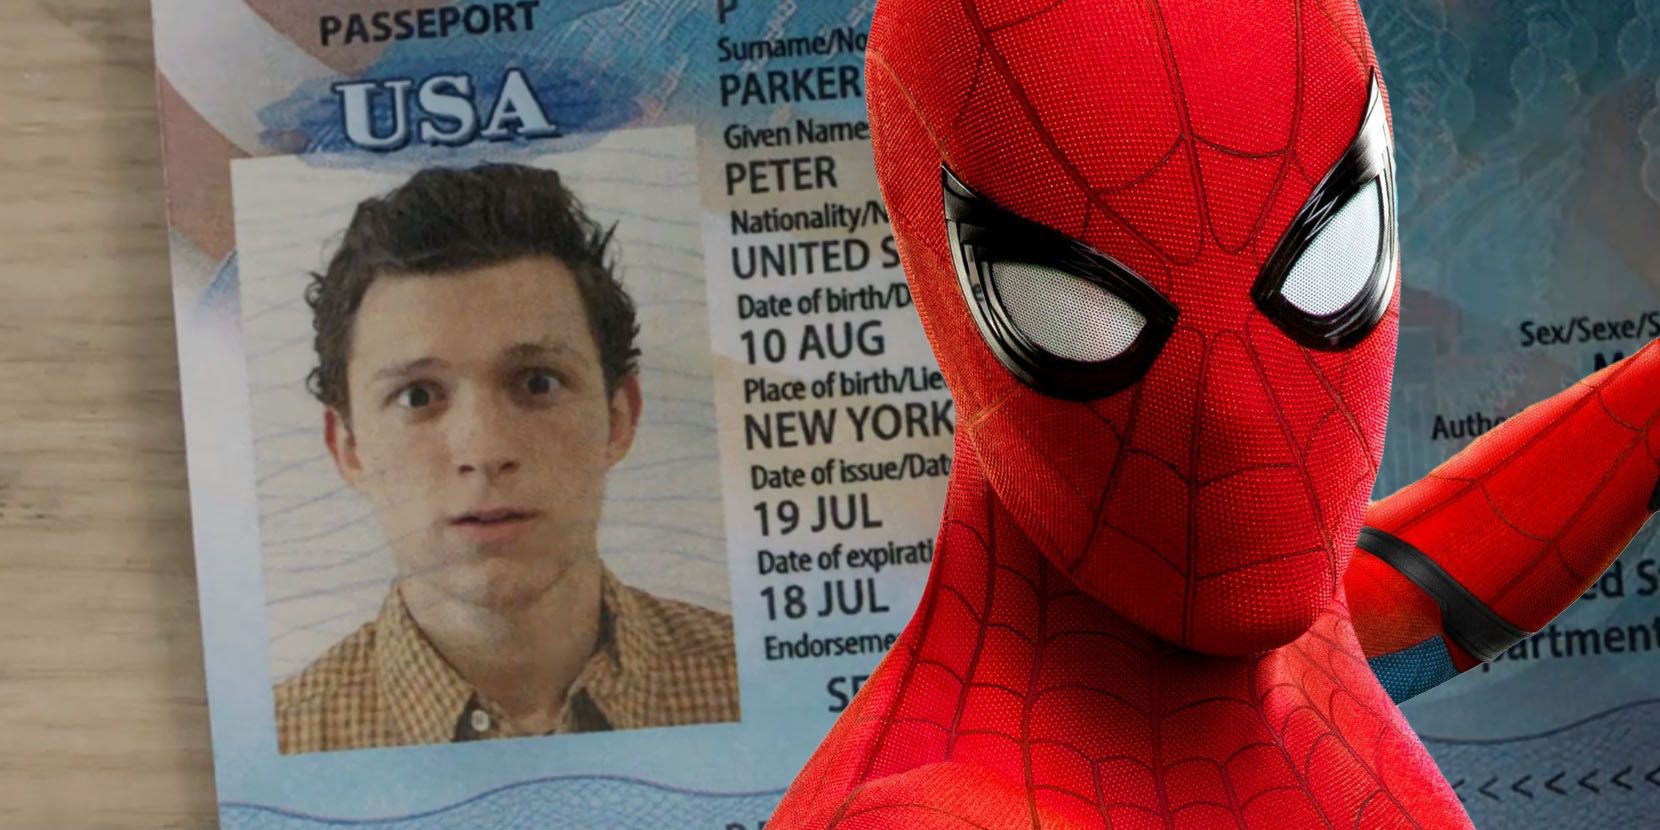 Spider-Man: Far From Home Ending Scene 